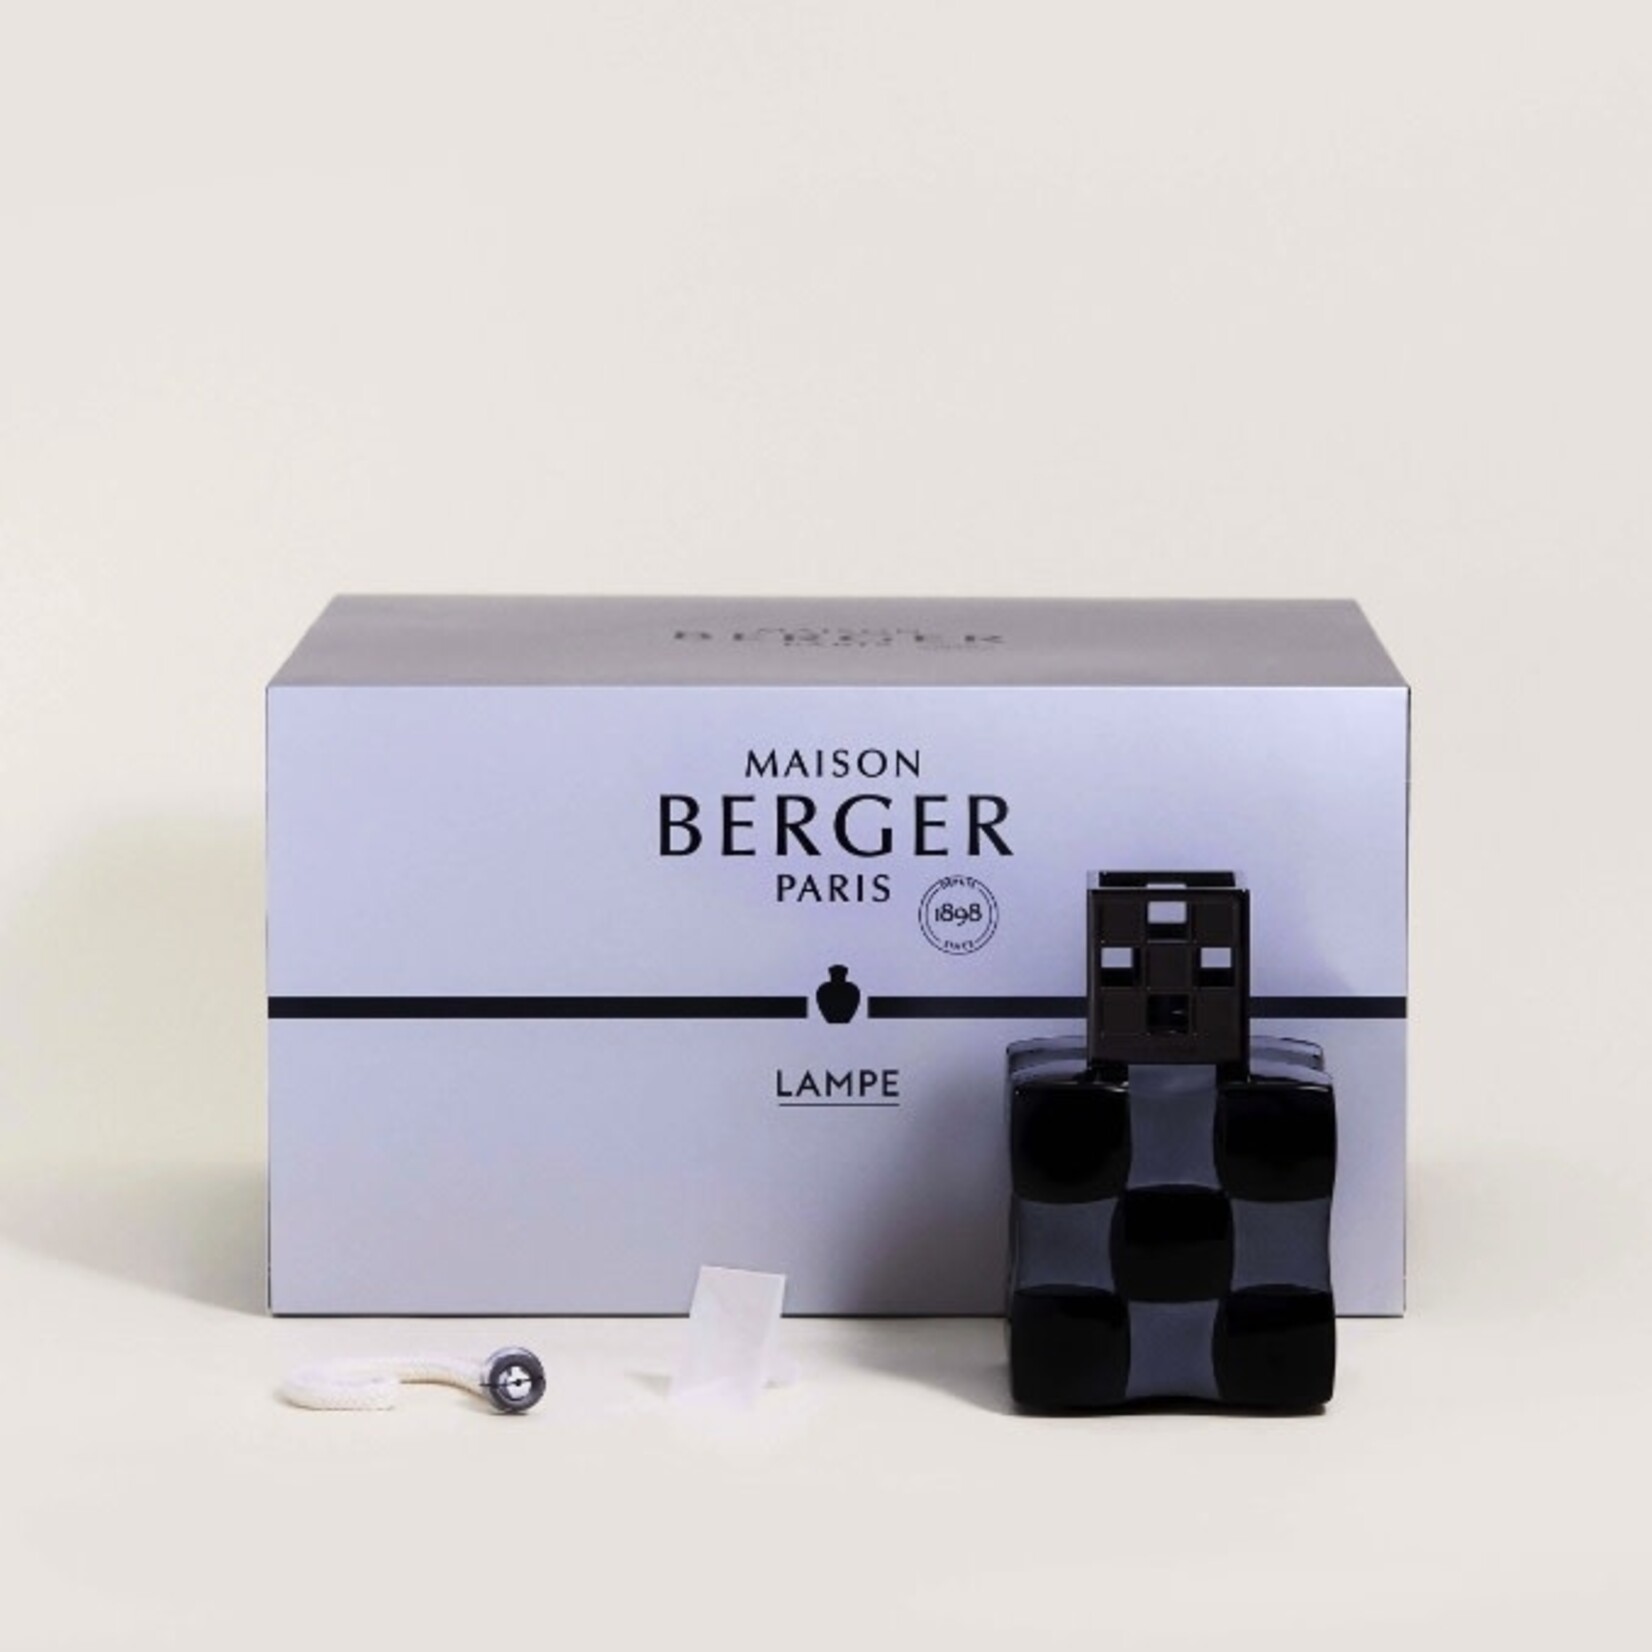 Maison Berger Paris Maison Berger Paris- Art Edition Damier Black Crystal